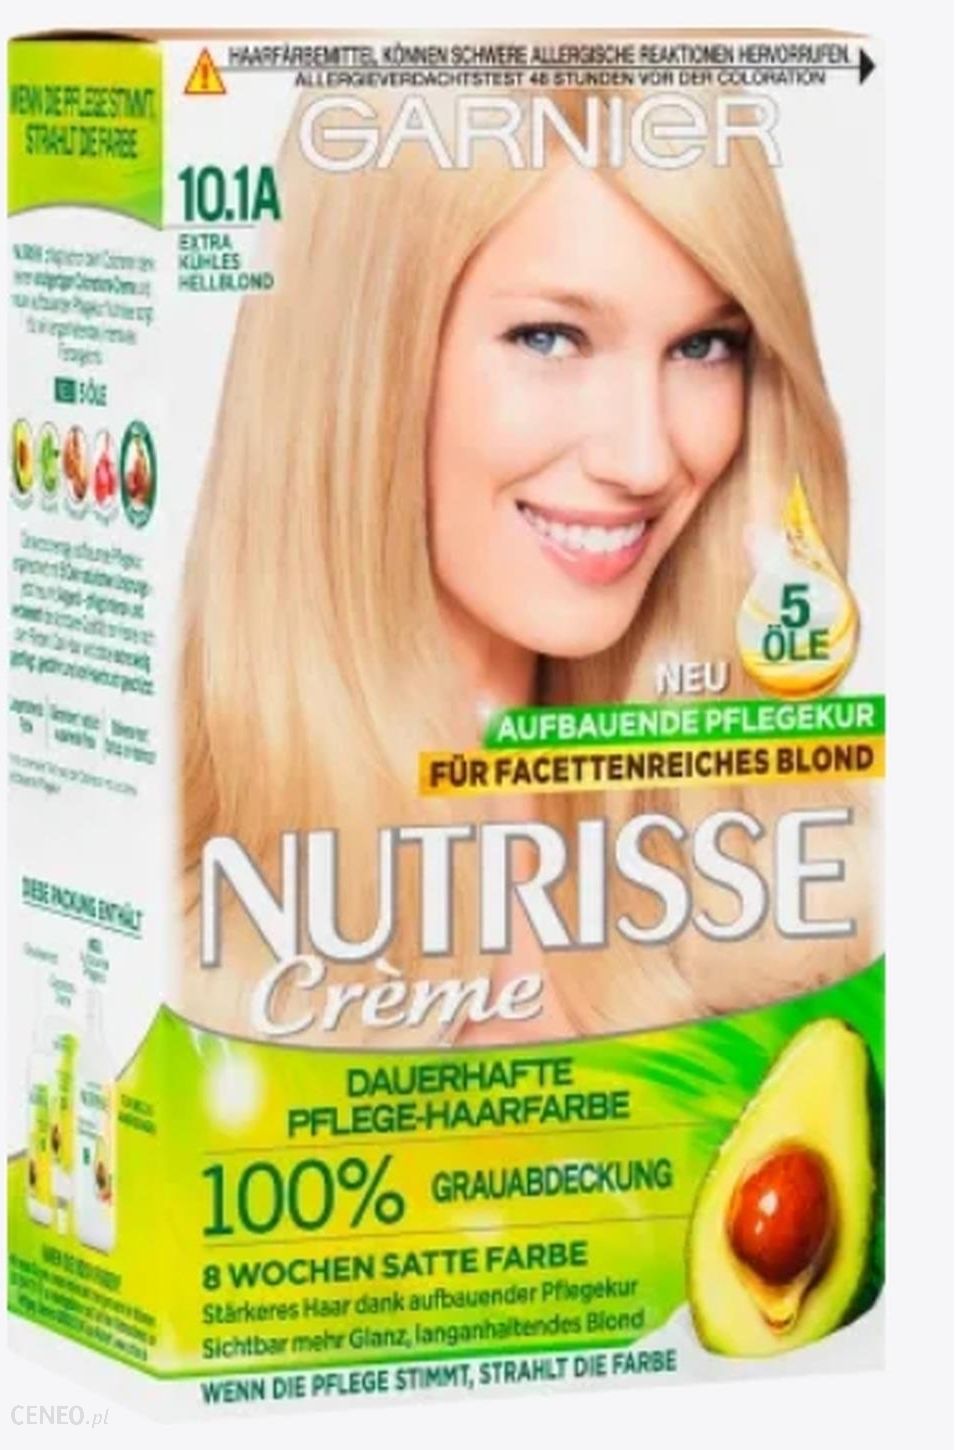 Garnier Nutrisse Hellblond i Farba Opinie włosów kuhles na do Extra ceny 10.1A 